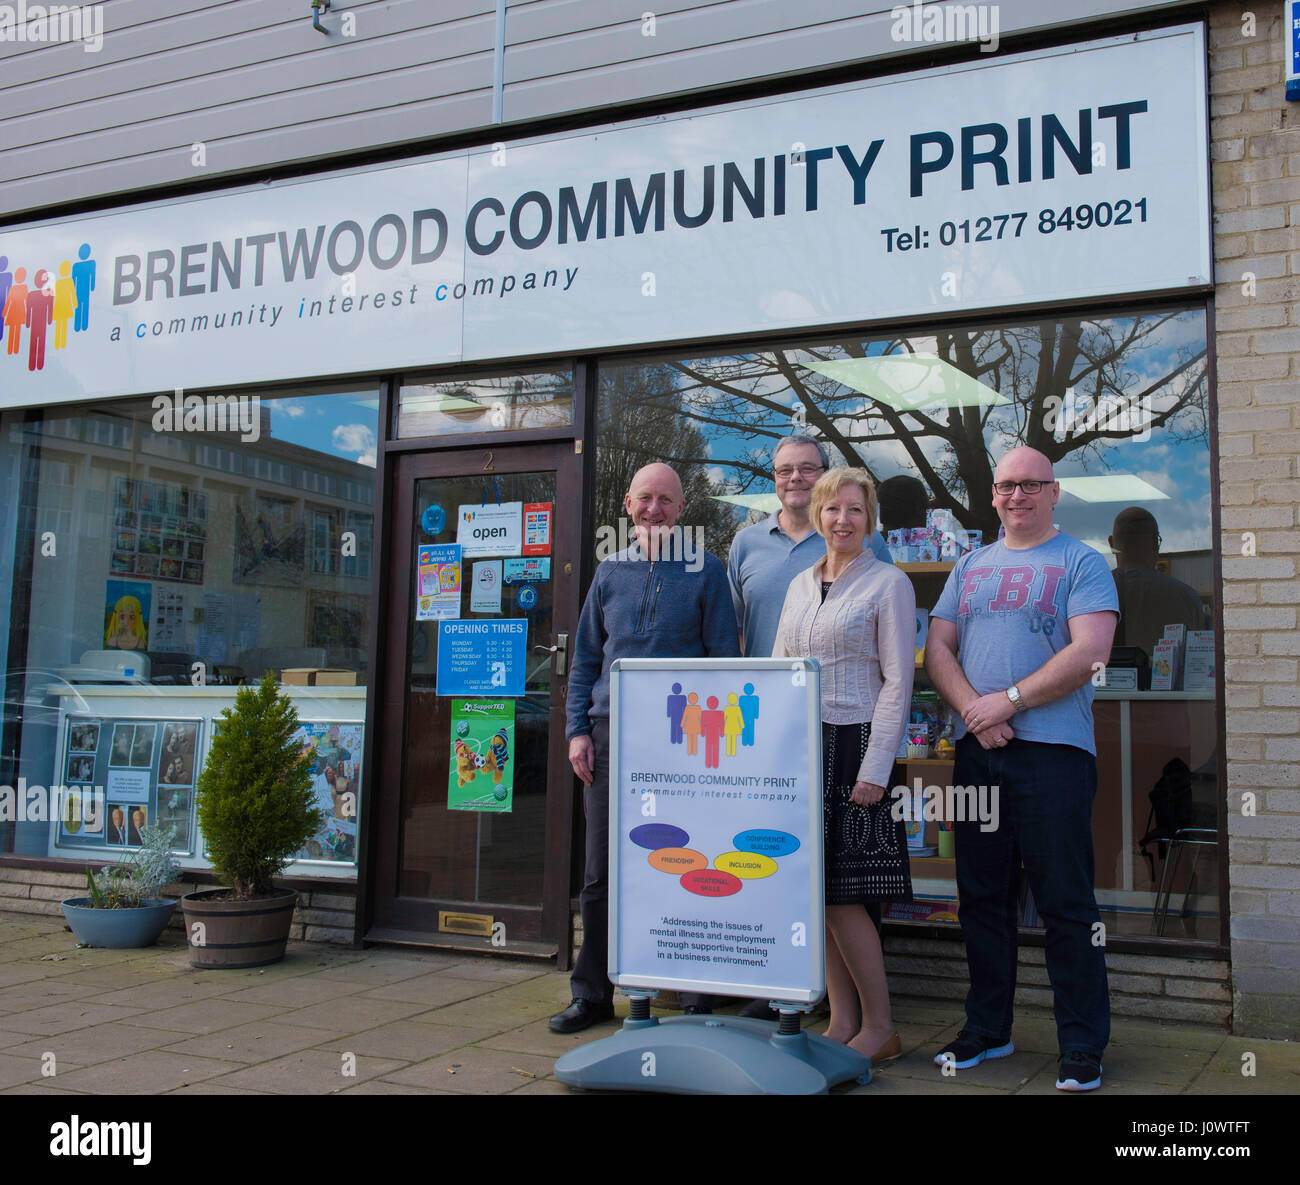 Brentwood Gemeinschaft Print - Unternehmen der Gemeinschaft, die von Menschen der Genesung von psychischen Erkrankungen zu helfen, Leben und Ihre persönlichen Fähigkeiten weiterzuentwickeln besetzt ist Stockfoto